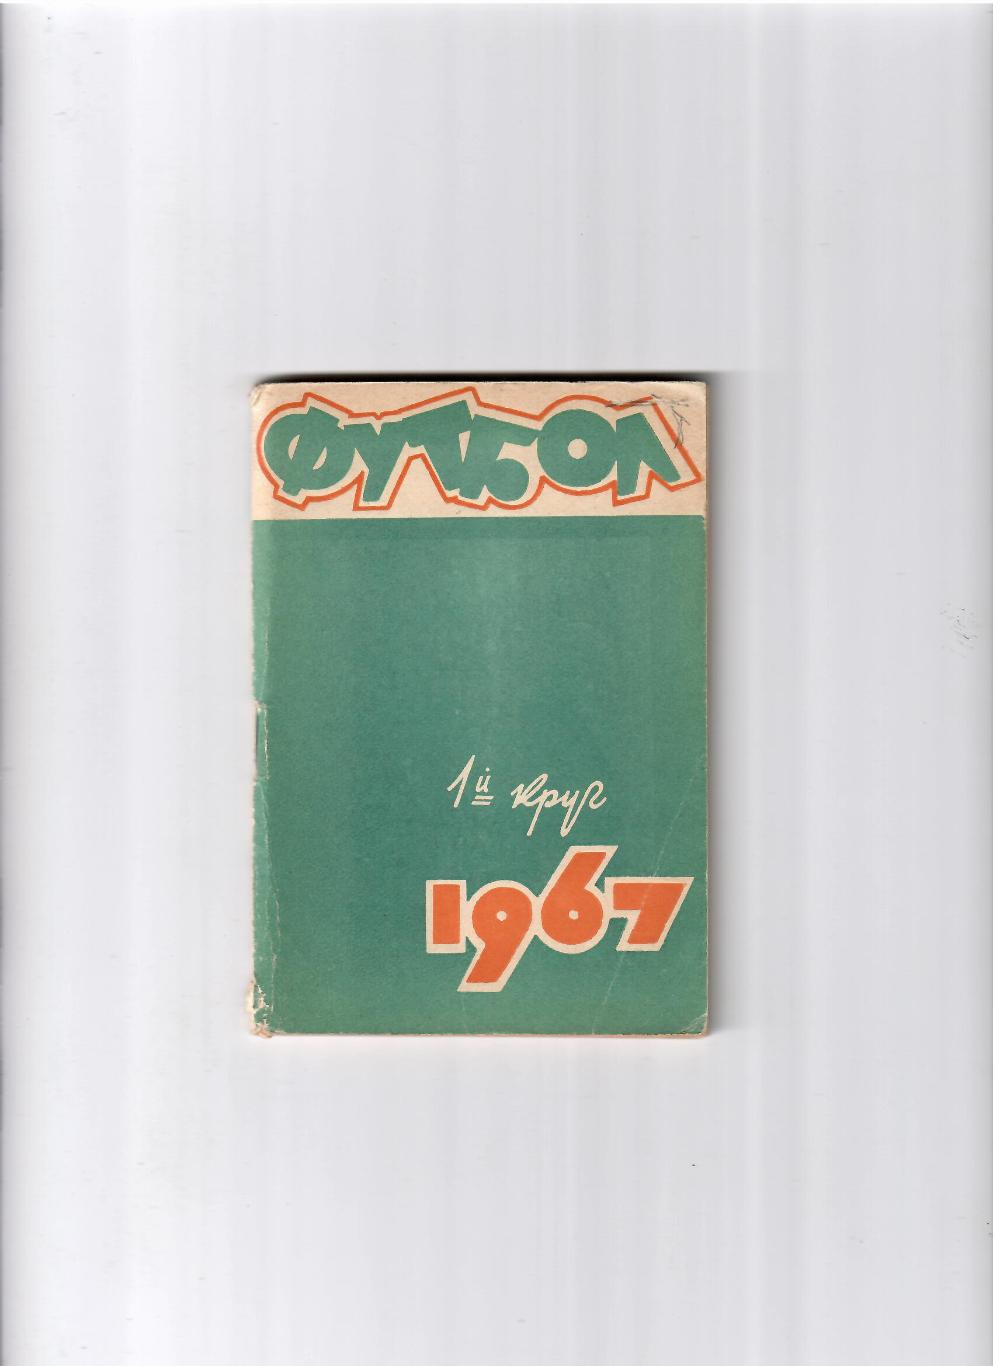 К/С Ростов-на Дону 1967 (1 круг)